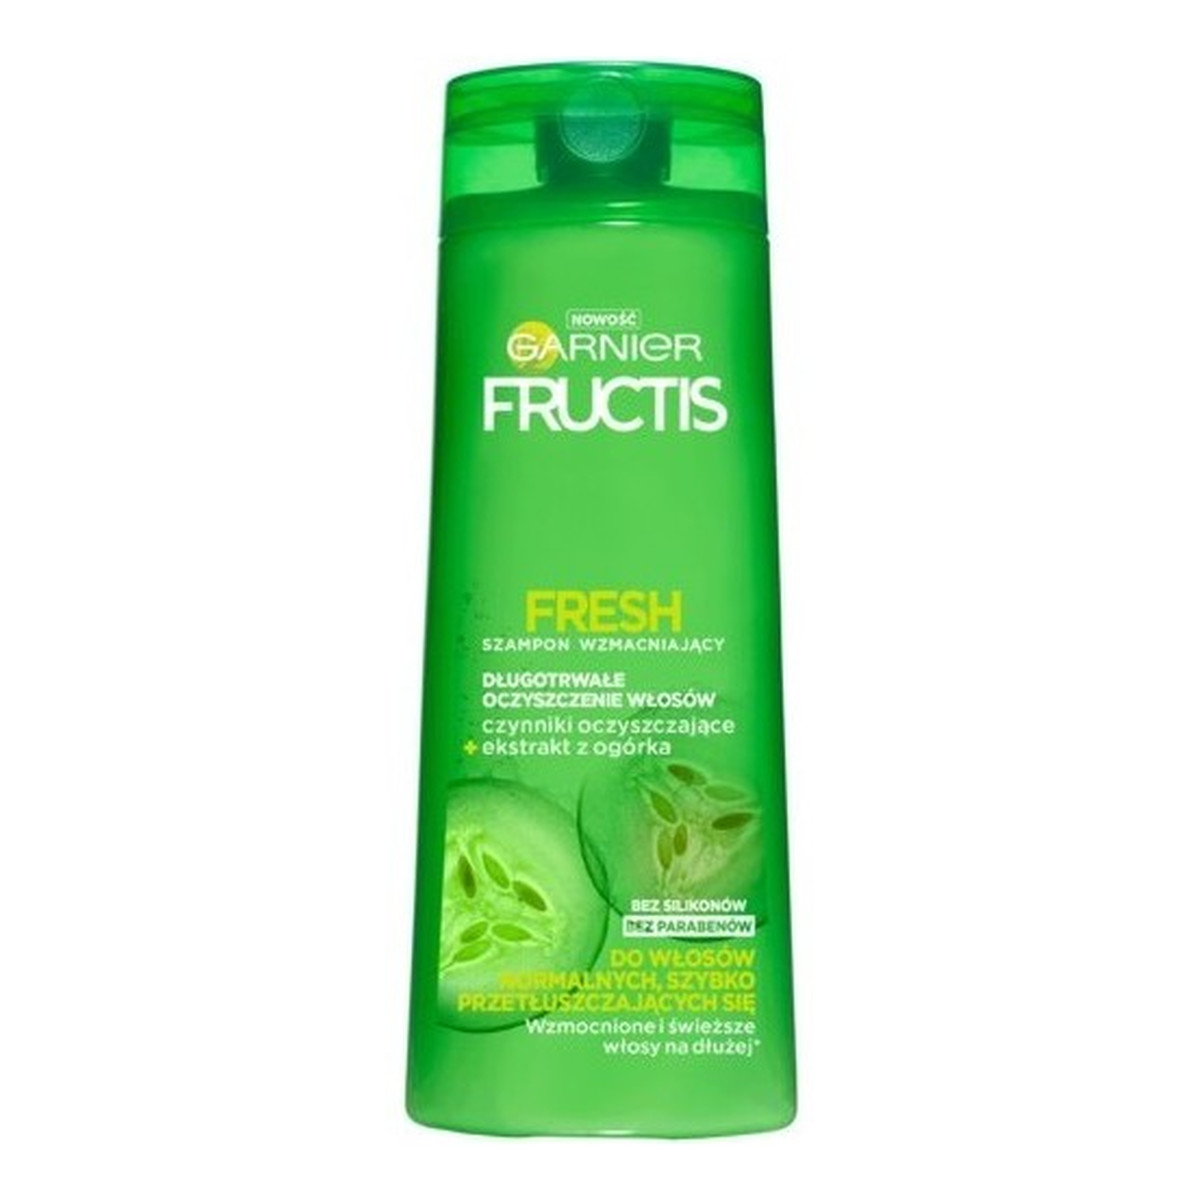 Garnier Fructis Fresh szampon wzmacniający do włosów normalnych przetłuszczających się 250ml